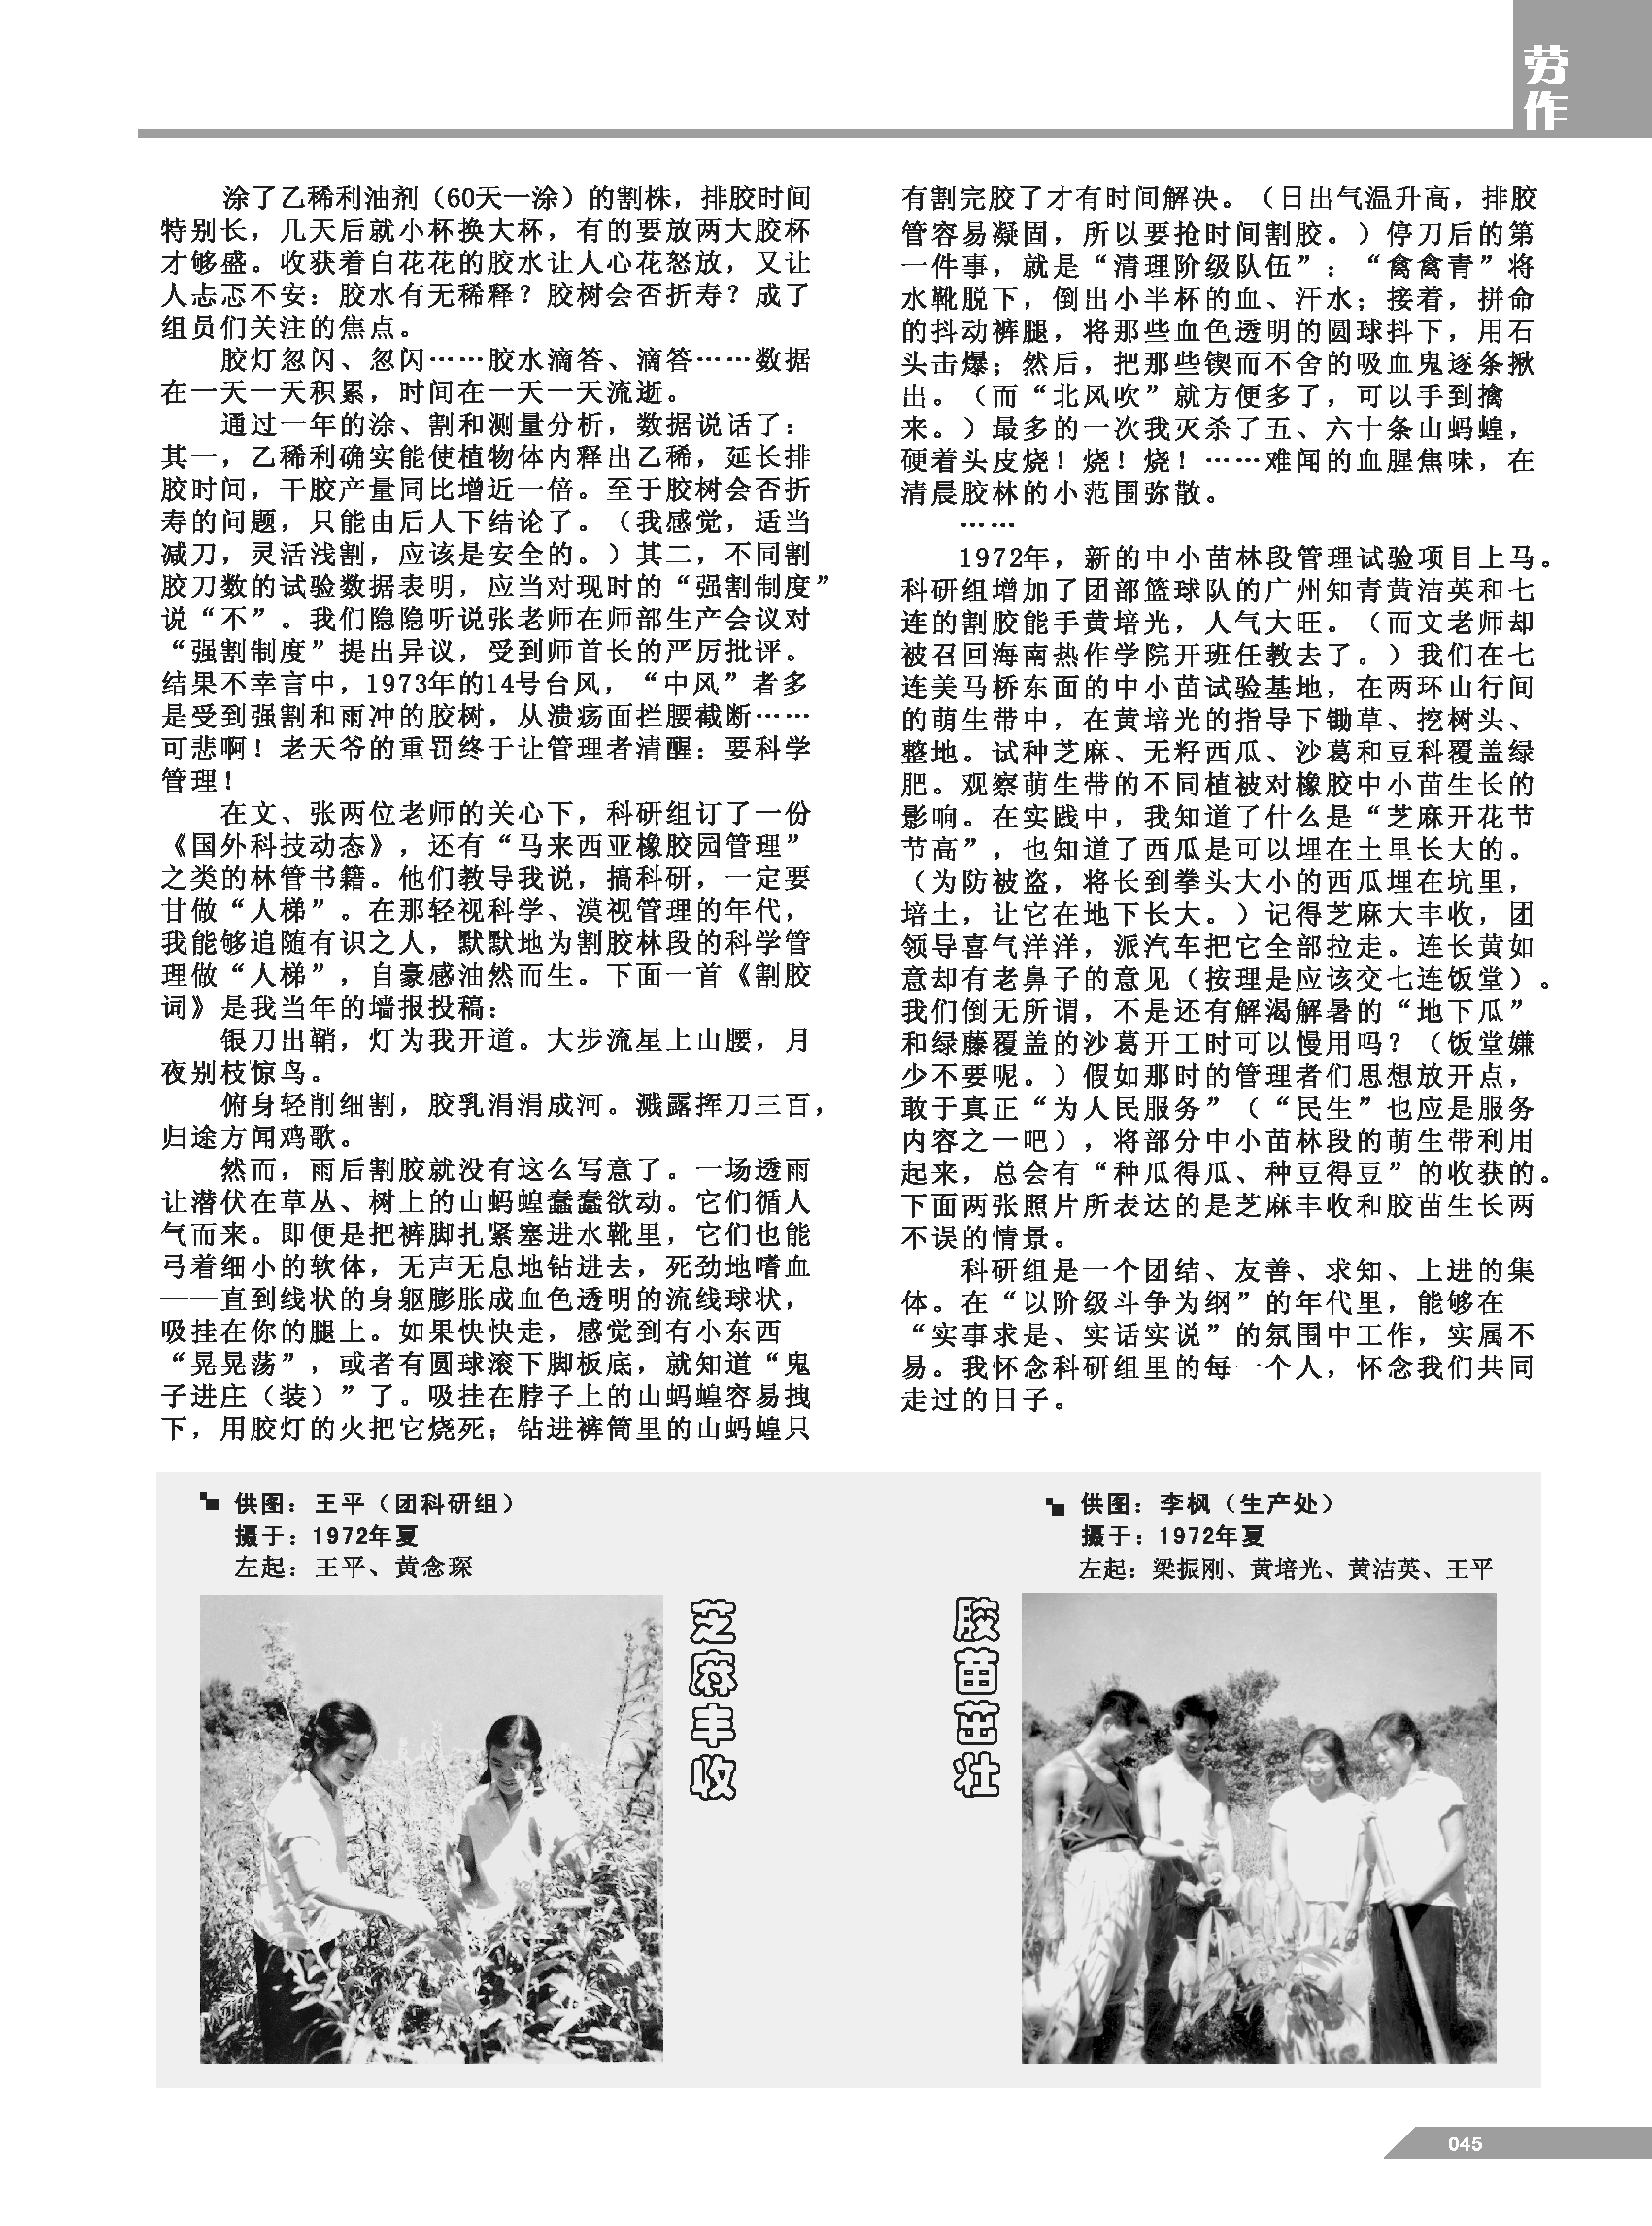 黄岭农场青春影踪内页45.png